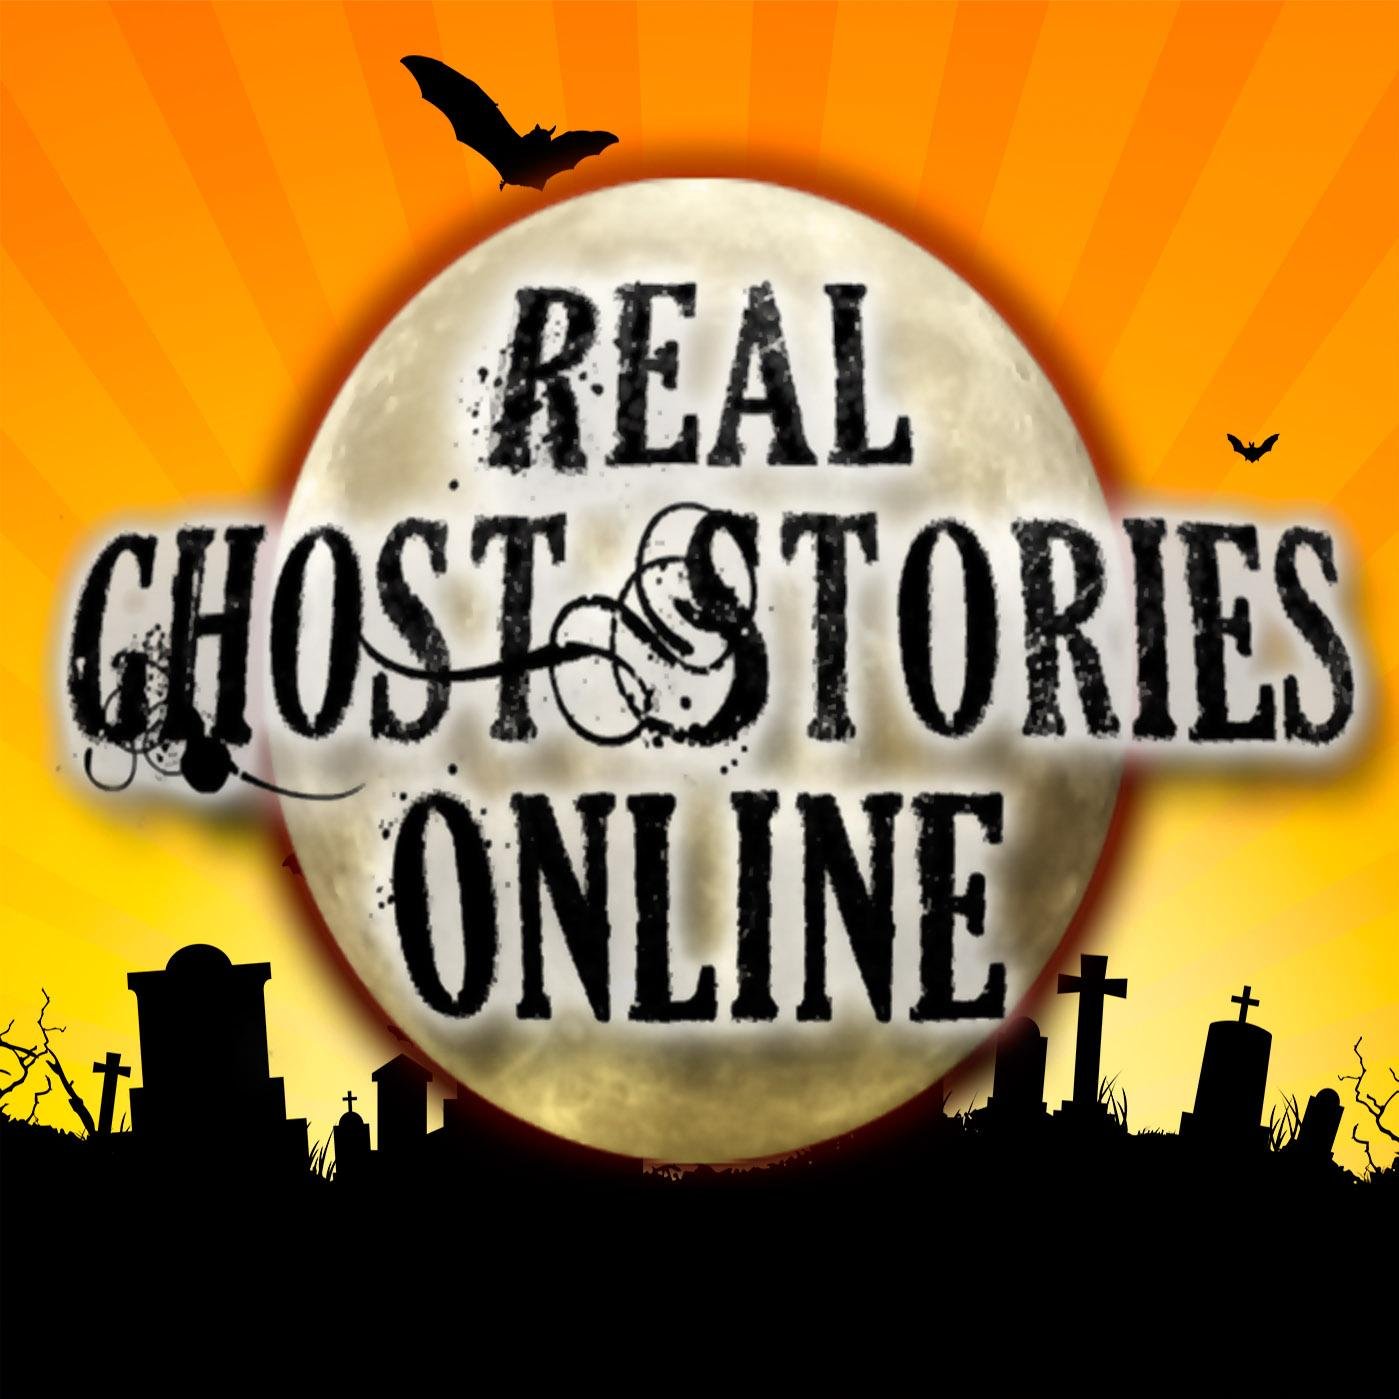 Tony Brueski from Real Ghost Stories Online. 
Facebook: realghoststoriesonline
Instagram: ghostpodcast
Snapcat: ghostpocast